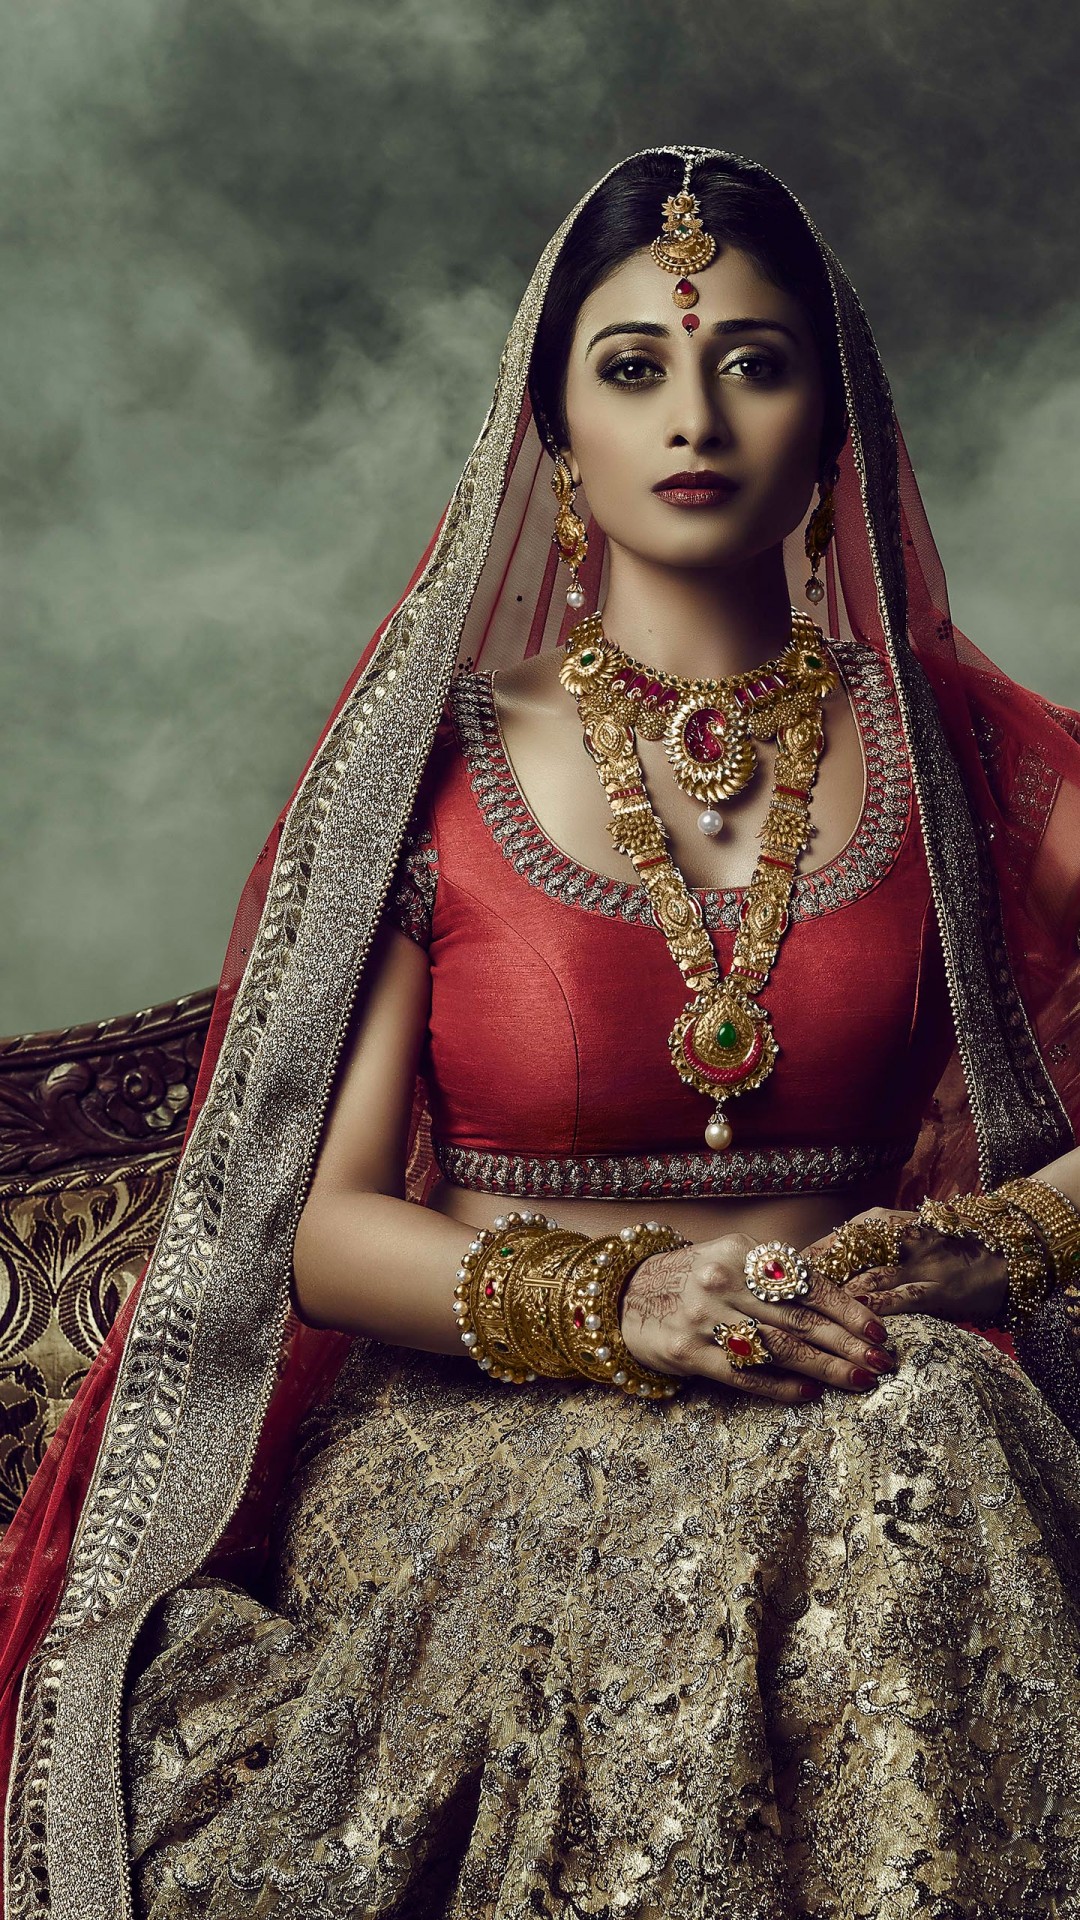 carta da parati matrimonio indiano,fotografia,sposa,ritratto,cg artwork,arte